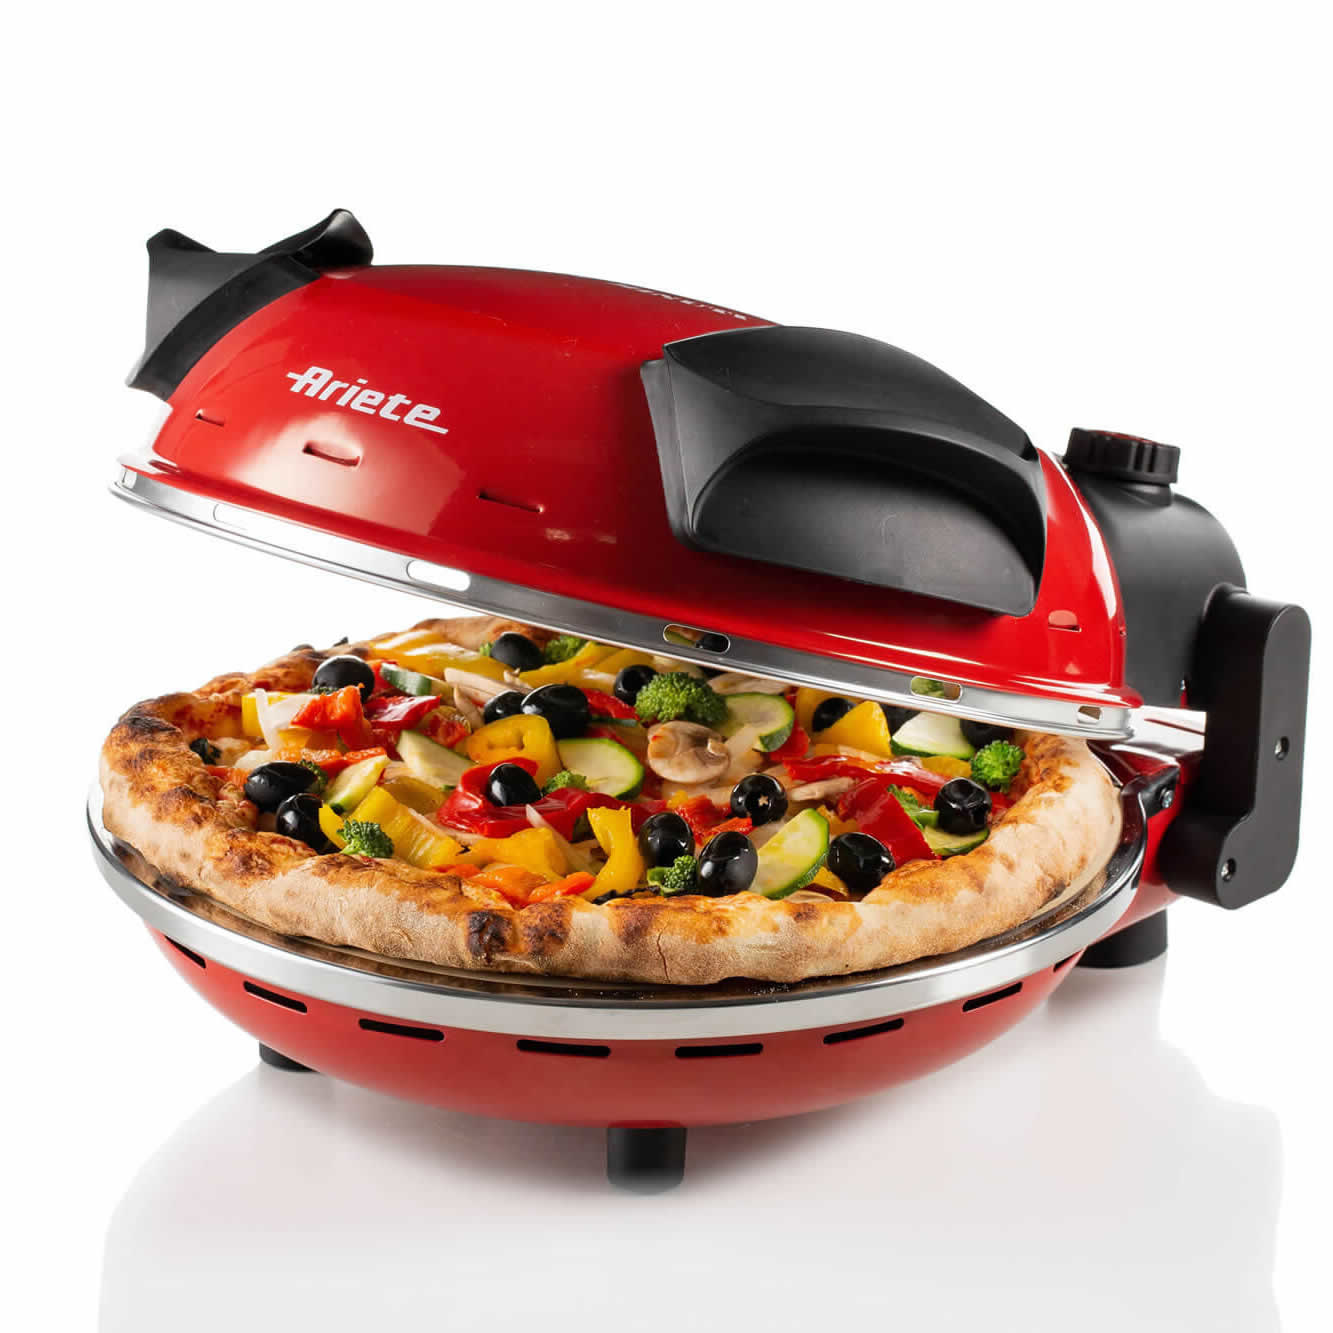 Ariete 909/10 Pizza in 4' Minuti, Forno per pizza, 1200 W, 5 livelli di  cottura, Temperatura Max 400°C, Pietra refrattaria anti-aderente, Rosso